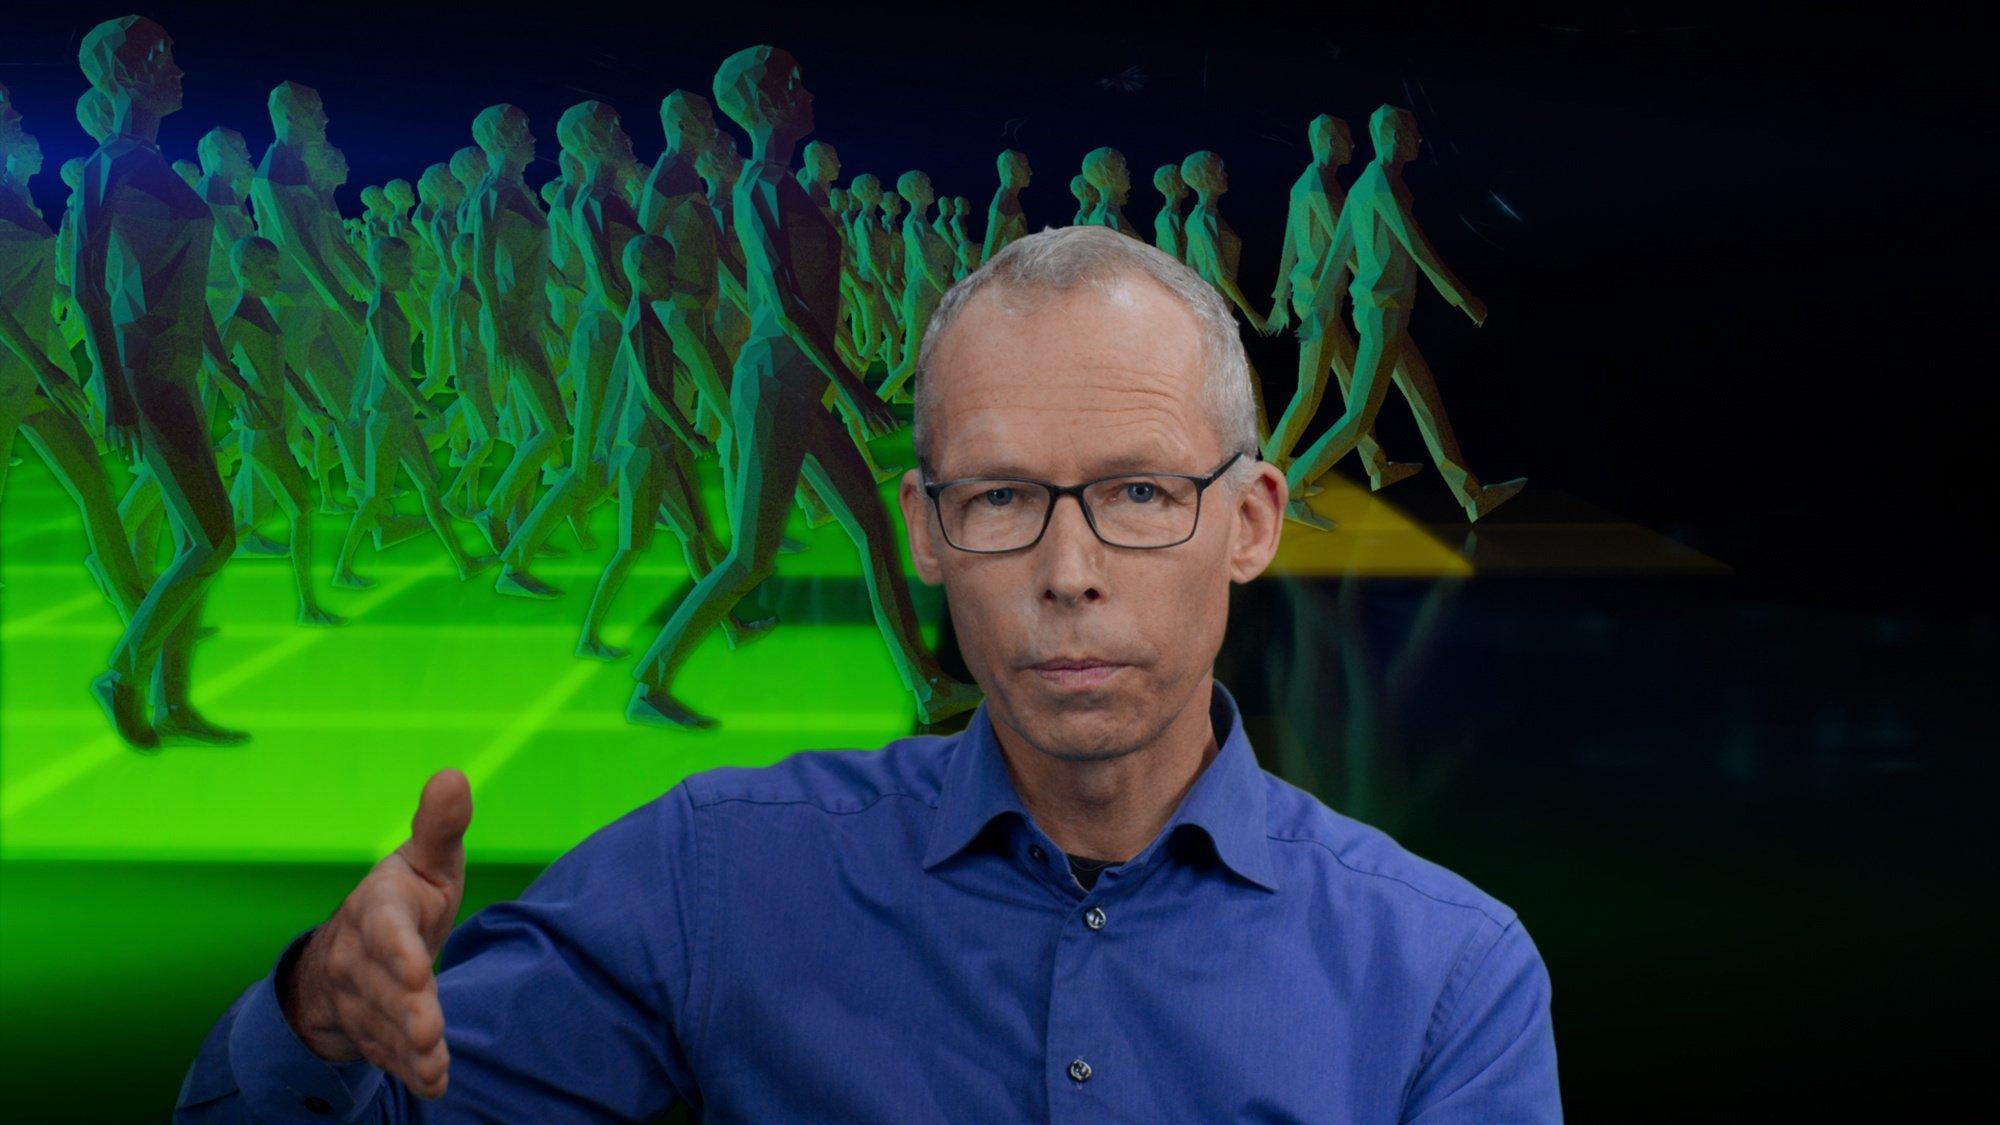 Im Vordergrund Johan Rockström, ein älterer Mann mit Brille, der mit seiner rechten Hand etwas illustriert, im Hintergrund eine Graphik: Viele menschliche Figuren gehen in einer grünen Zone, einige sind schon auf gelben Untergrund unterwegs. © 2021 Netflix, Inc.